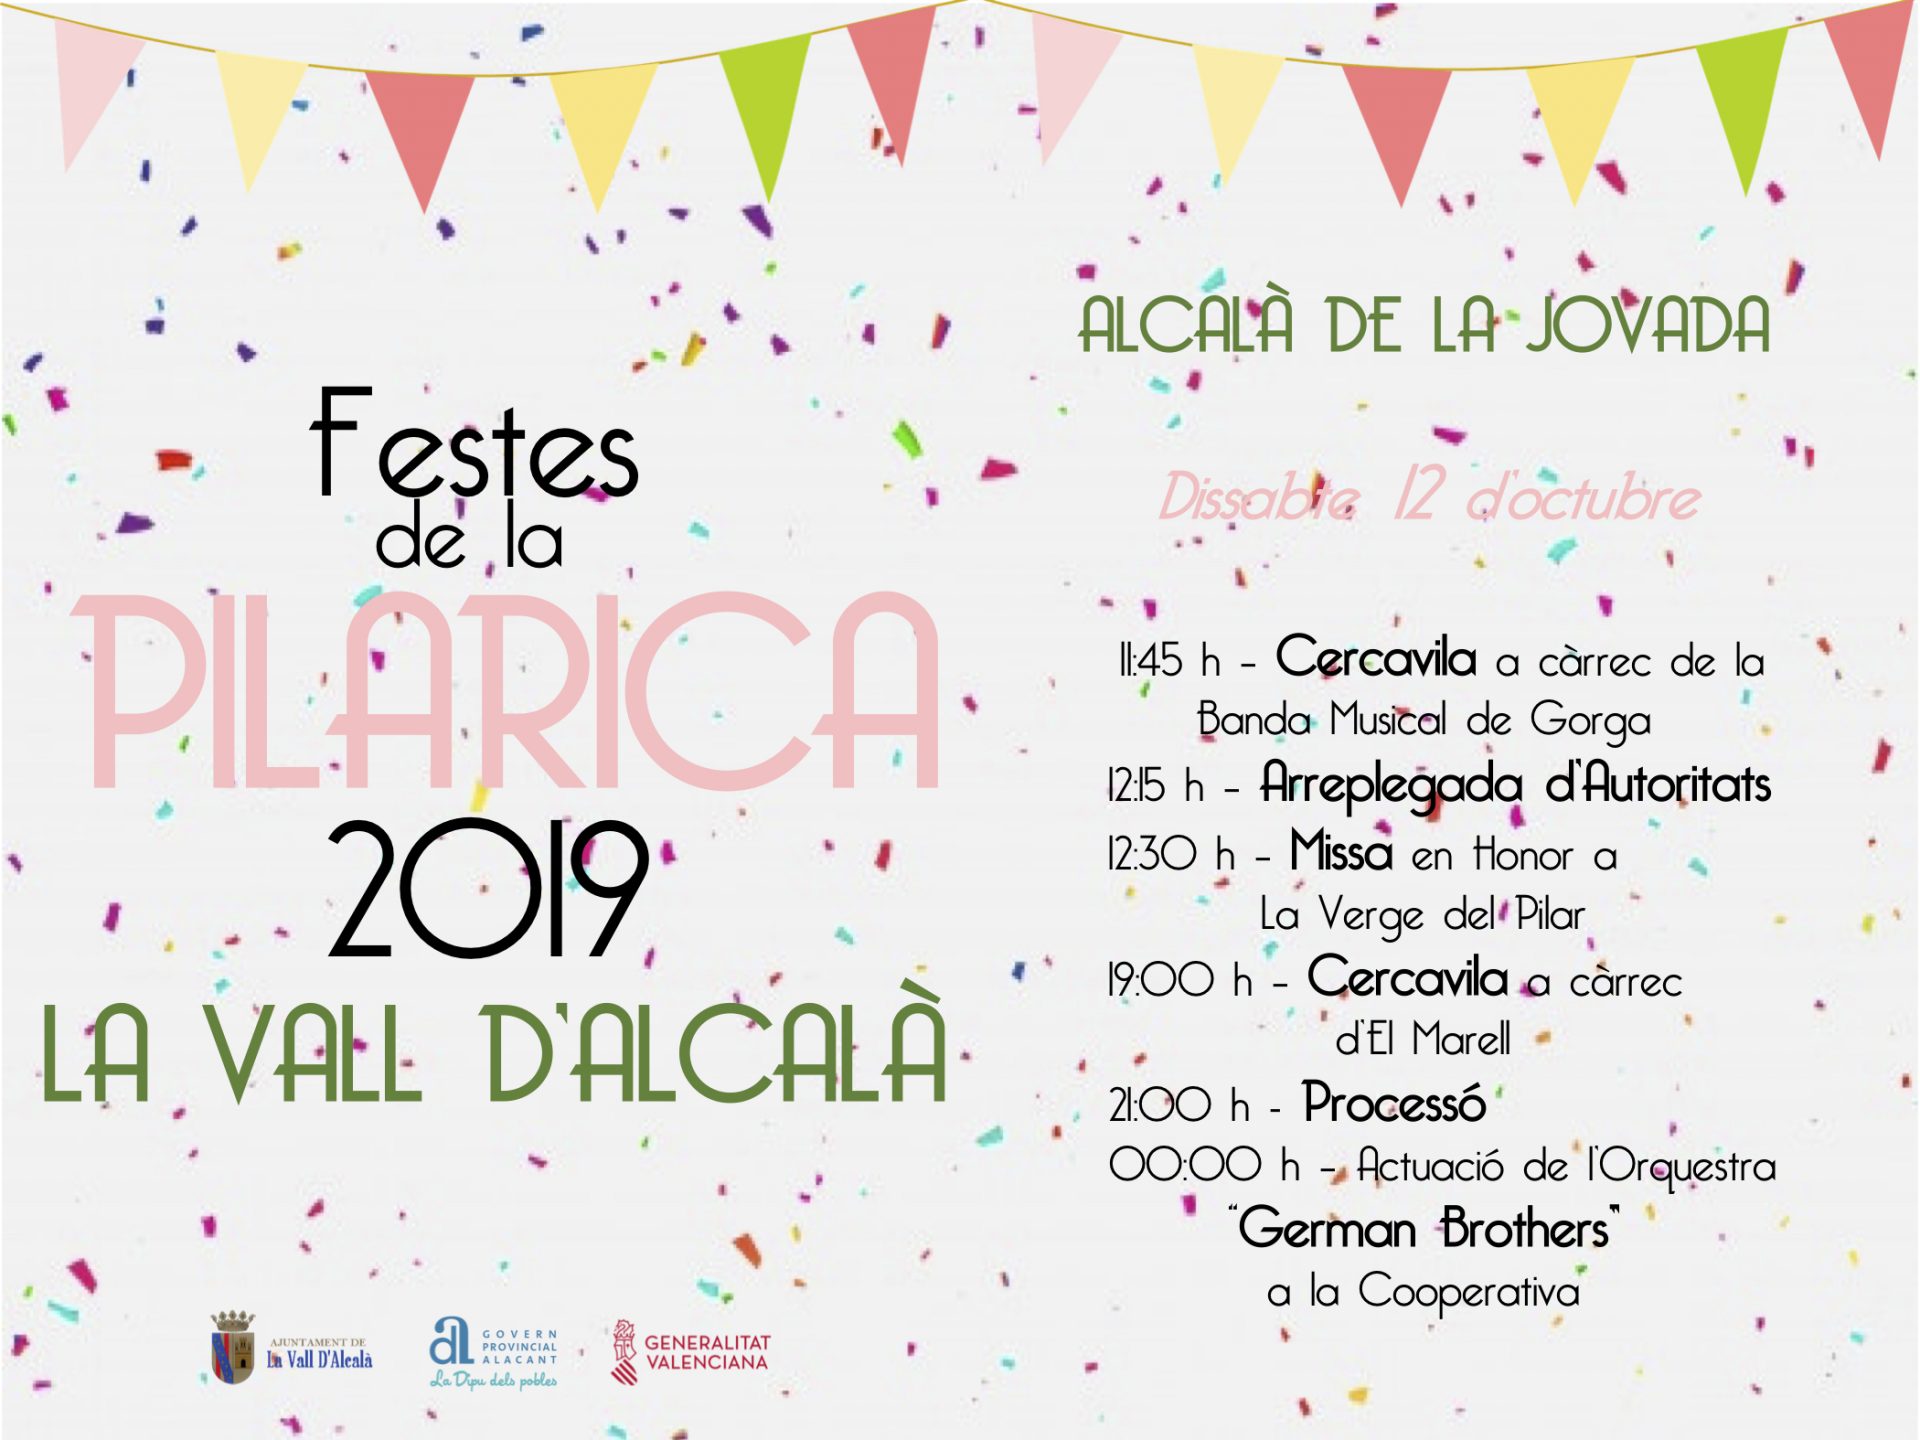 Festes de la Pilarica 2019 - 2